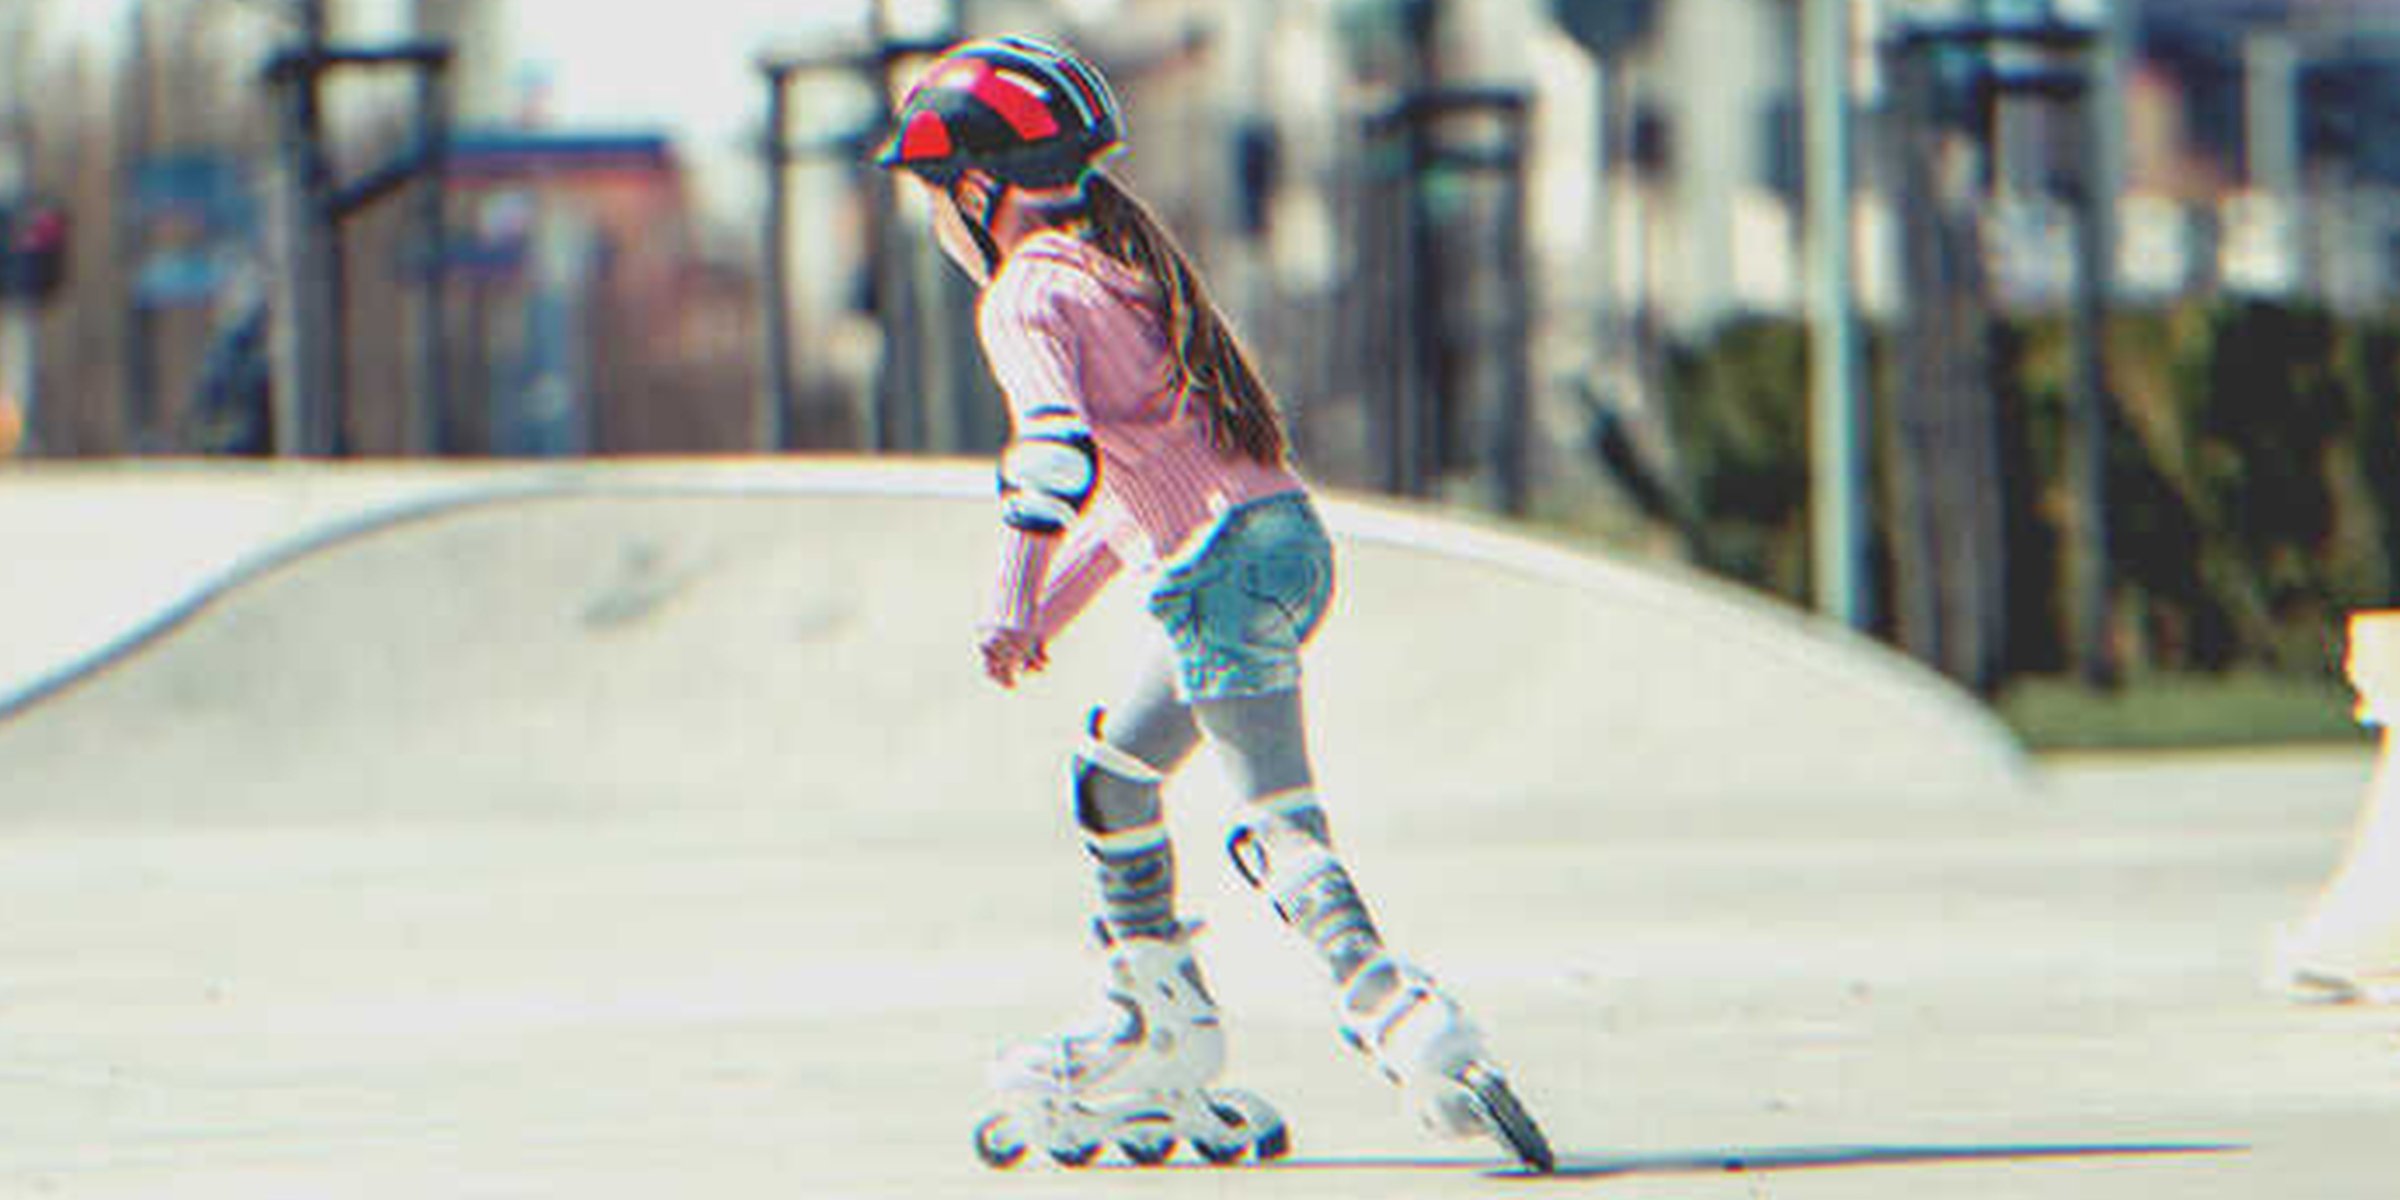 Kind auf Skates | Quelle: Shutterstock.com